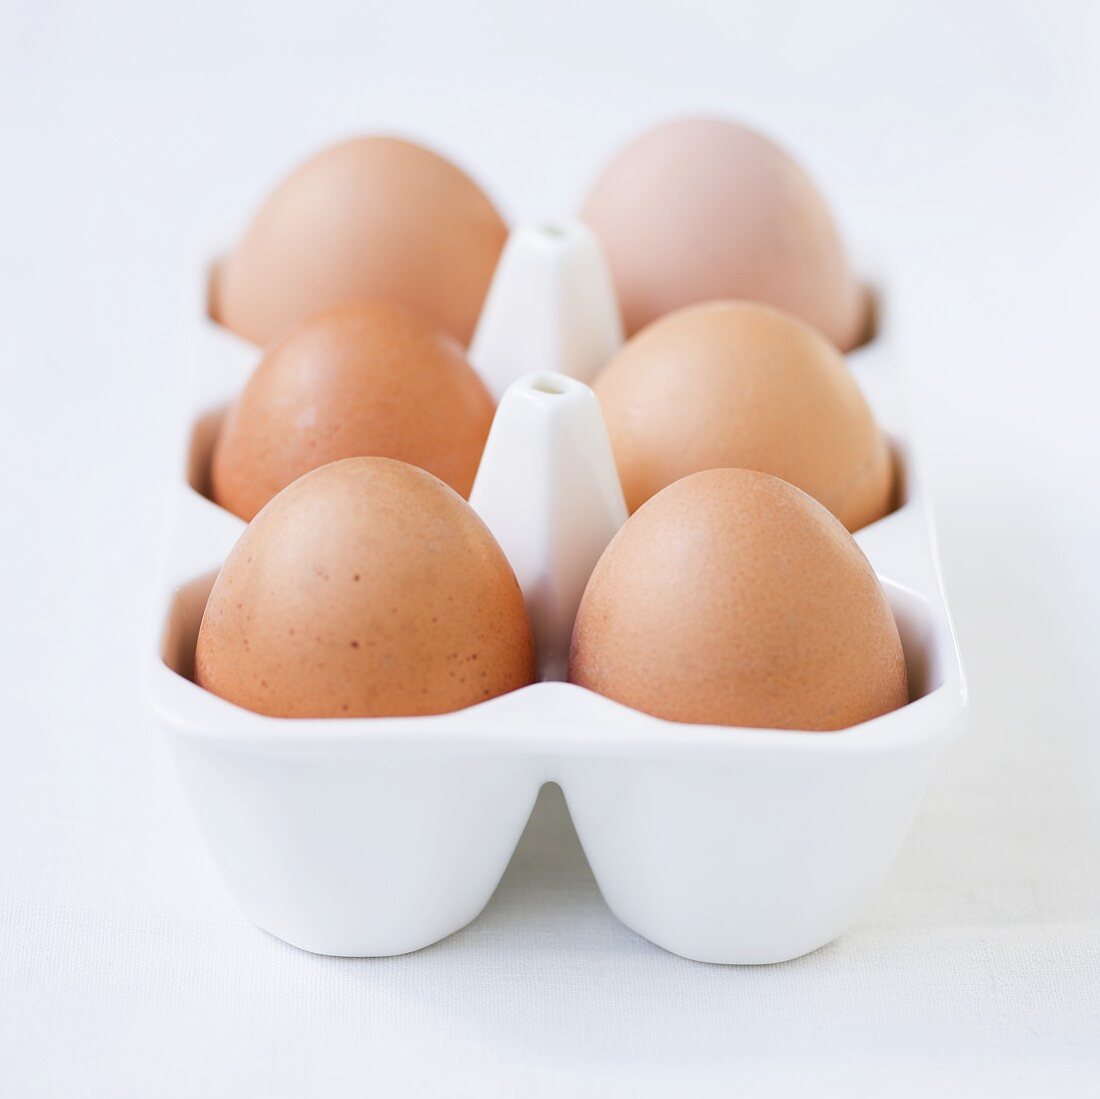 Fresh eggs in porcelain egg holder